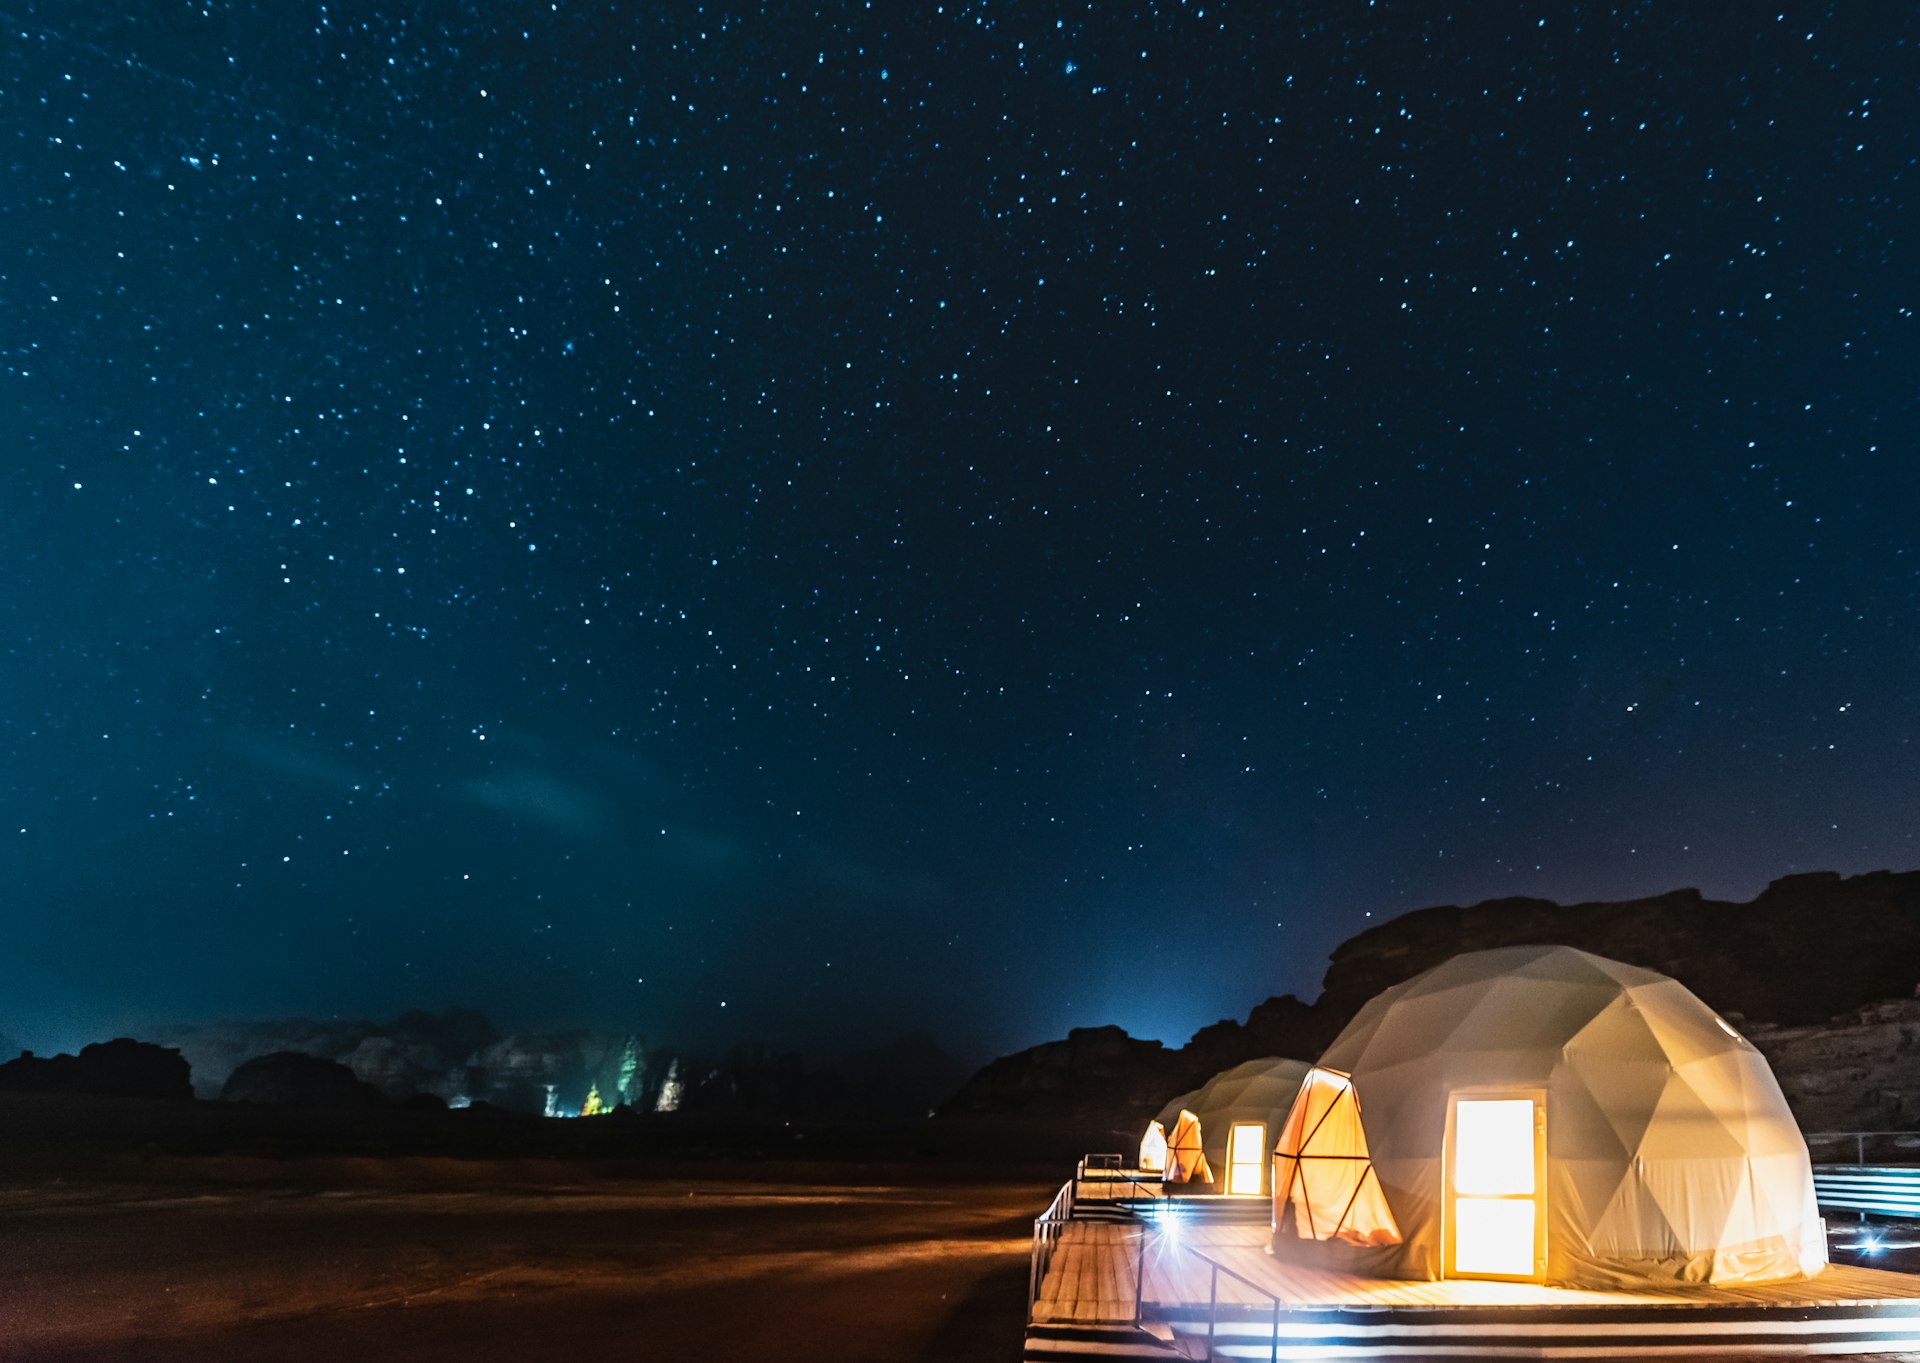 Stars above martian dome tents in Wadi Rum Desert, Jordan.